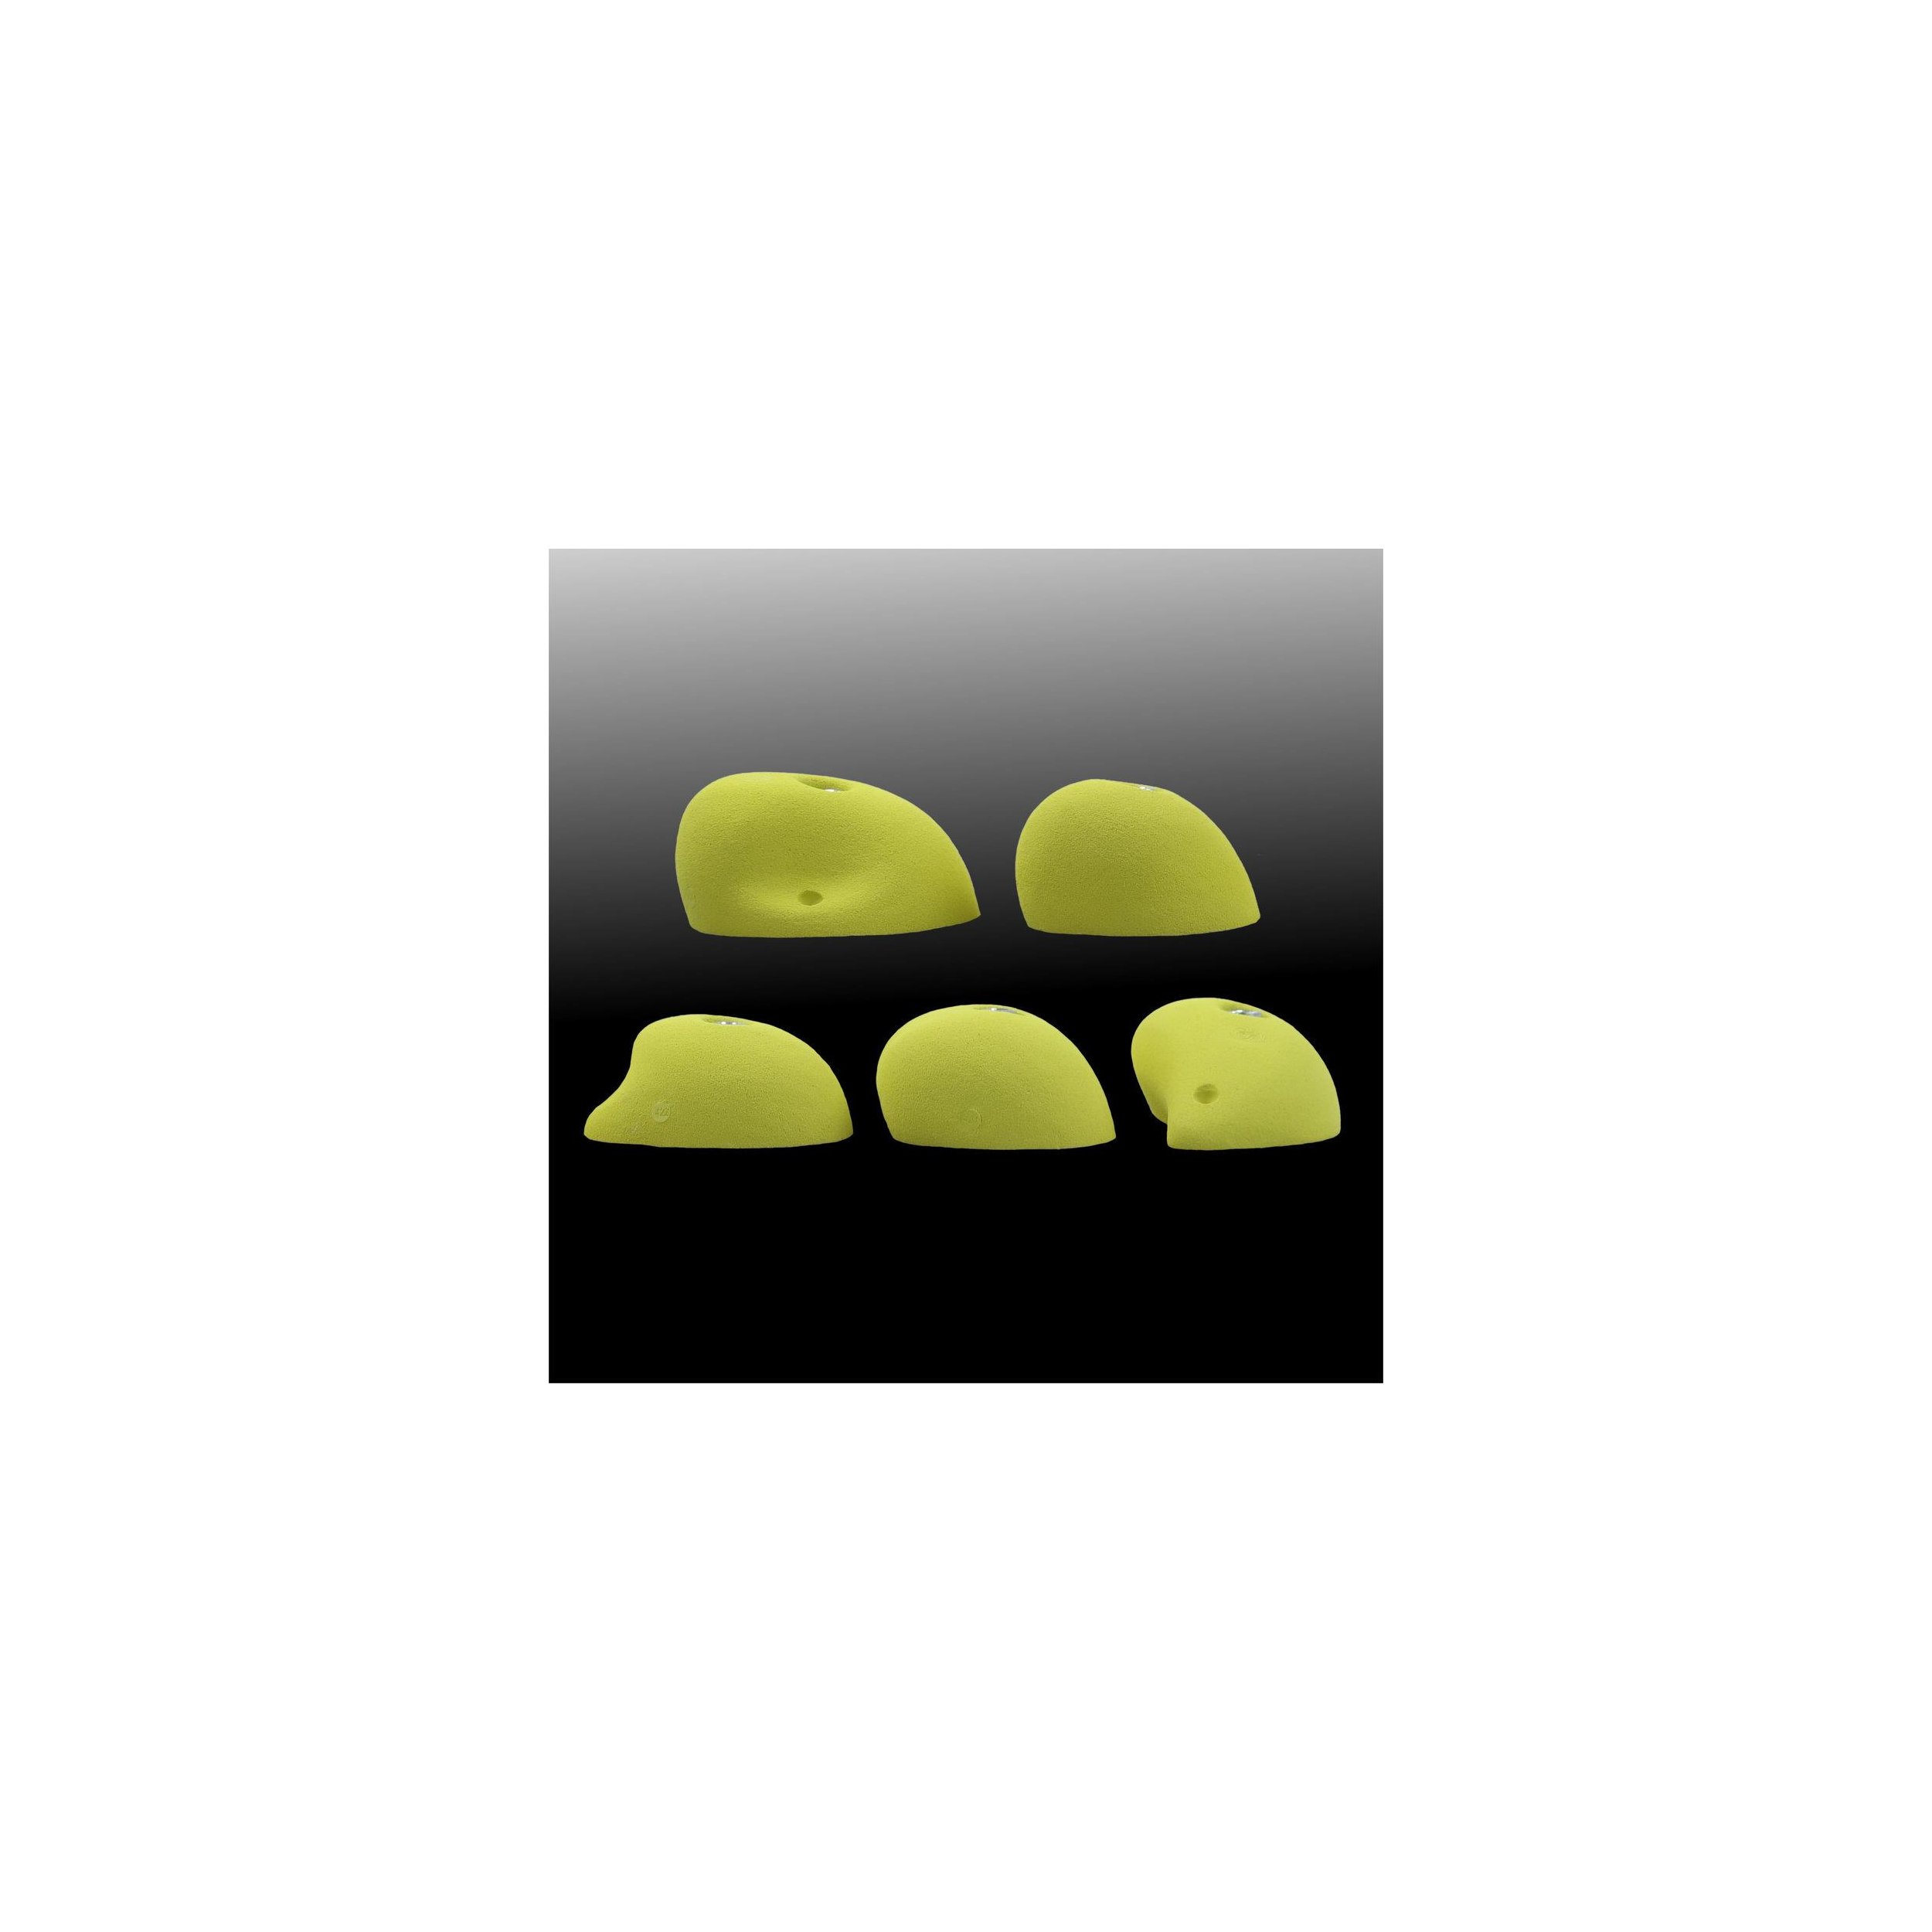 Klettergriff-Set Schinder 5-teilig Sandstein ( braun beige)